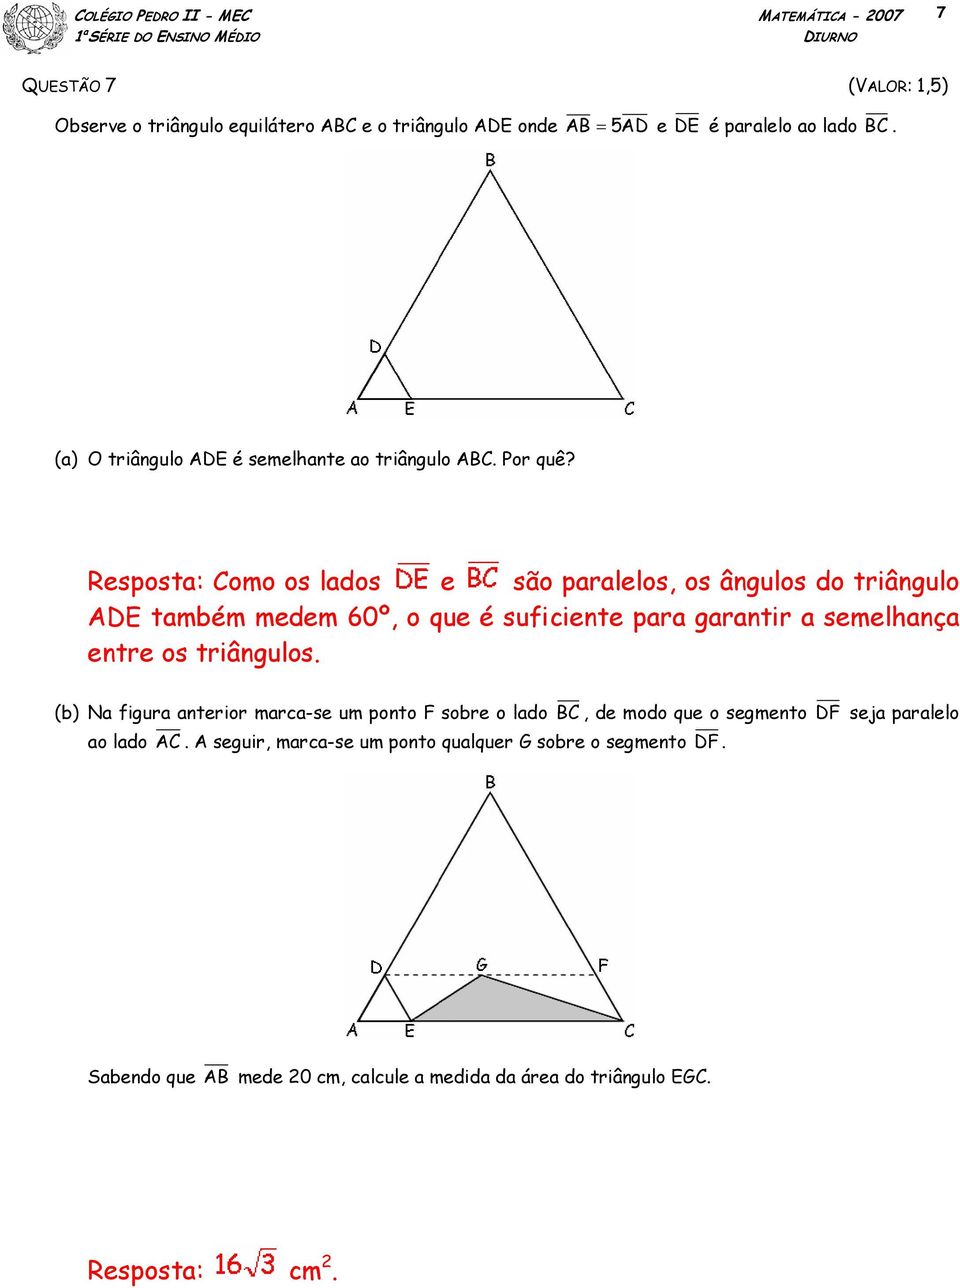 Resposta: Como os lados e são paralelos, os ângulos do triângulo ADE também medem 60º, o que é suficiente para garantir a semelhança entre os